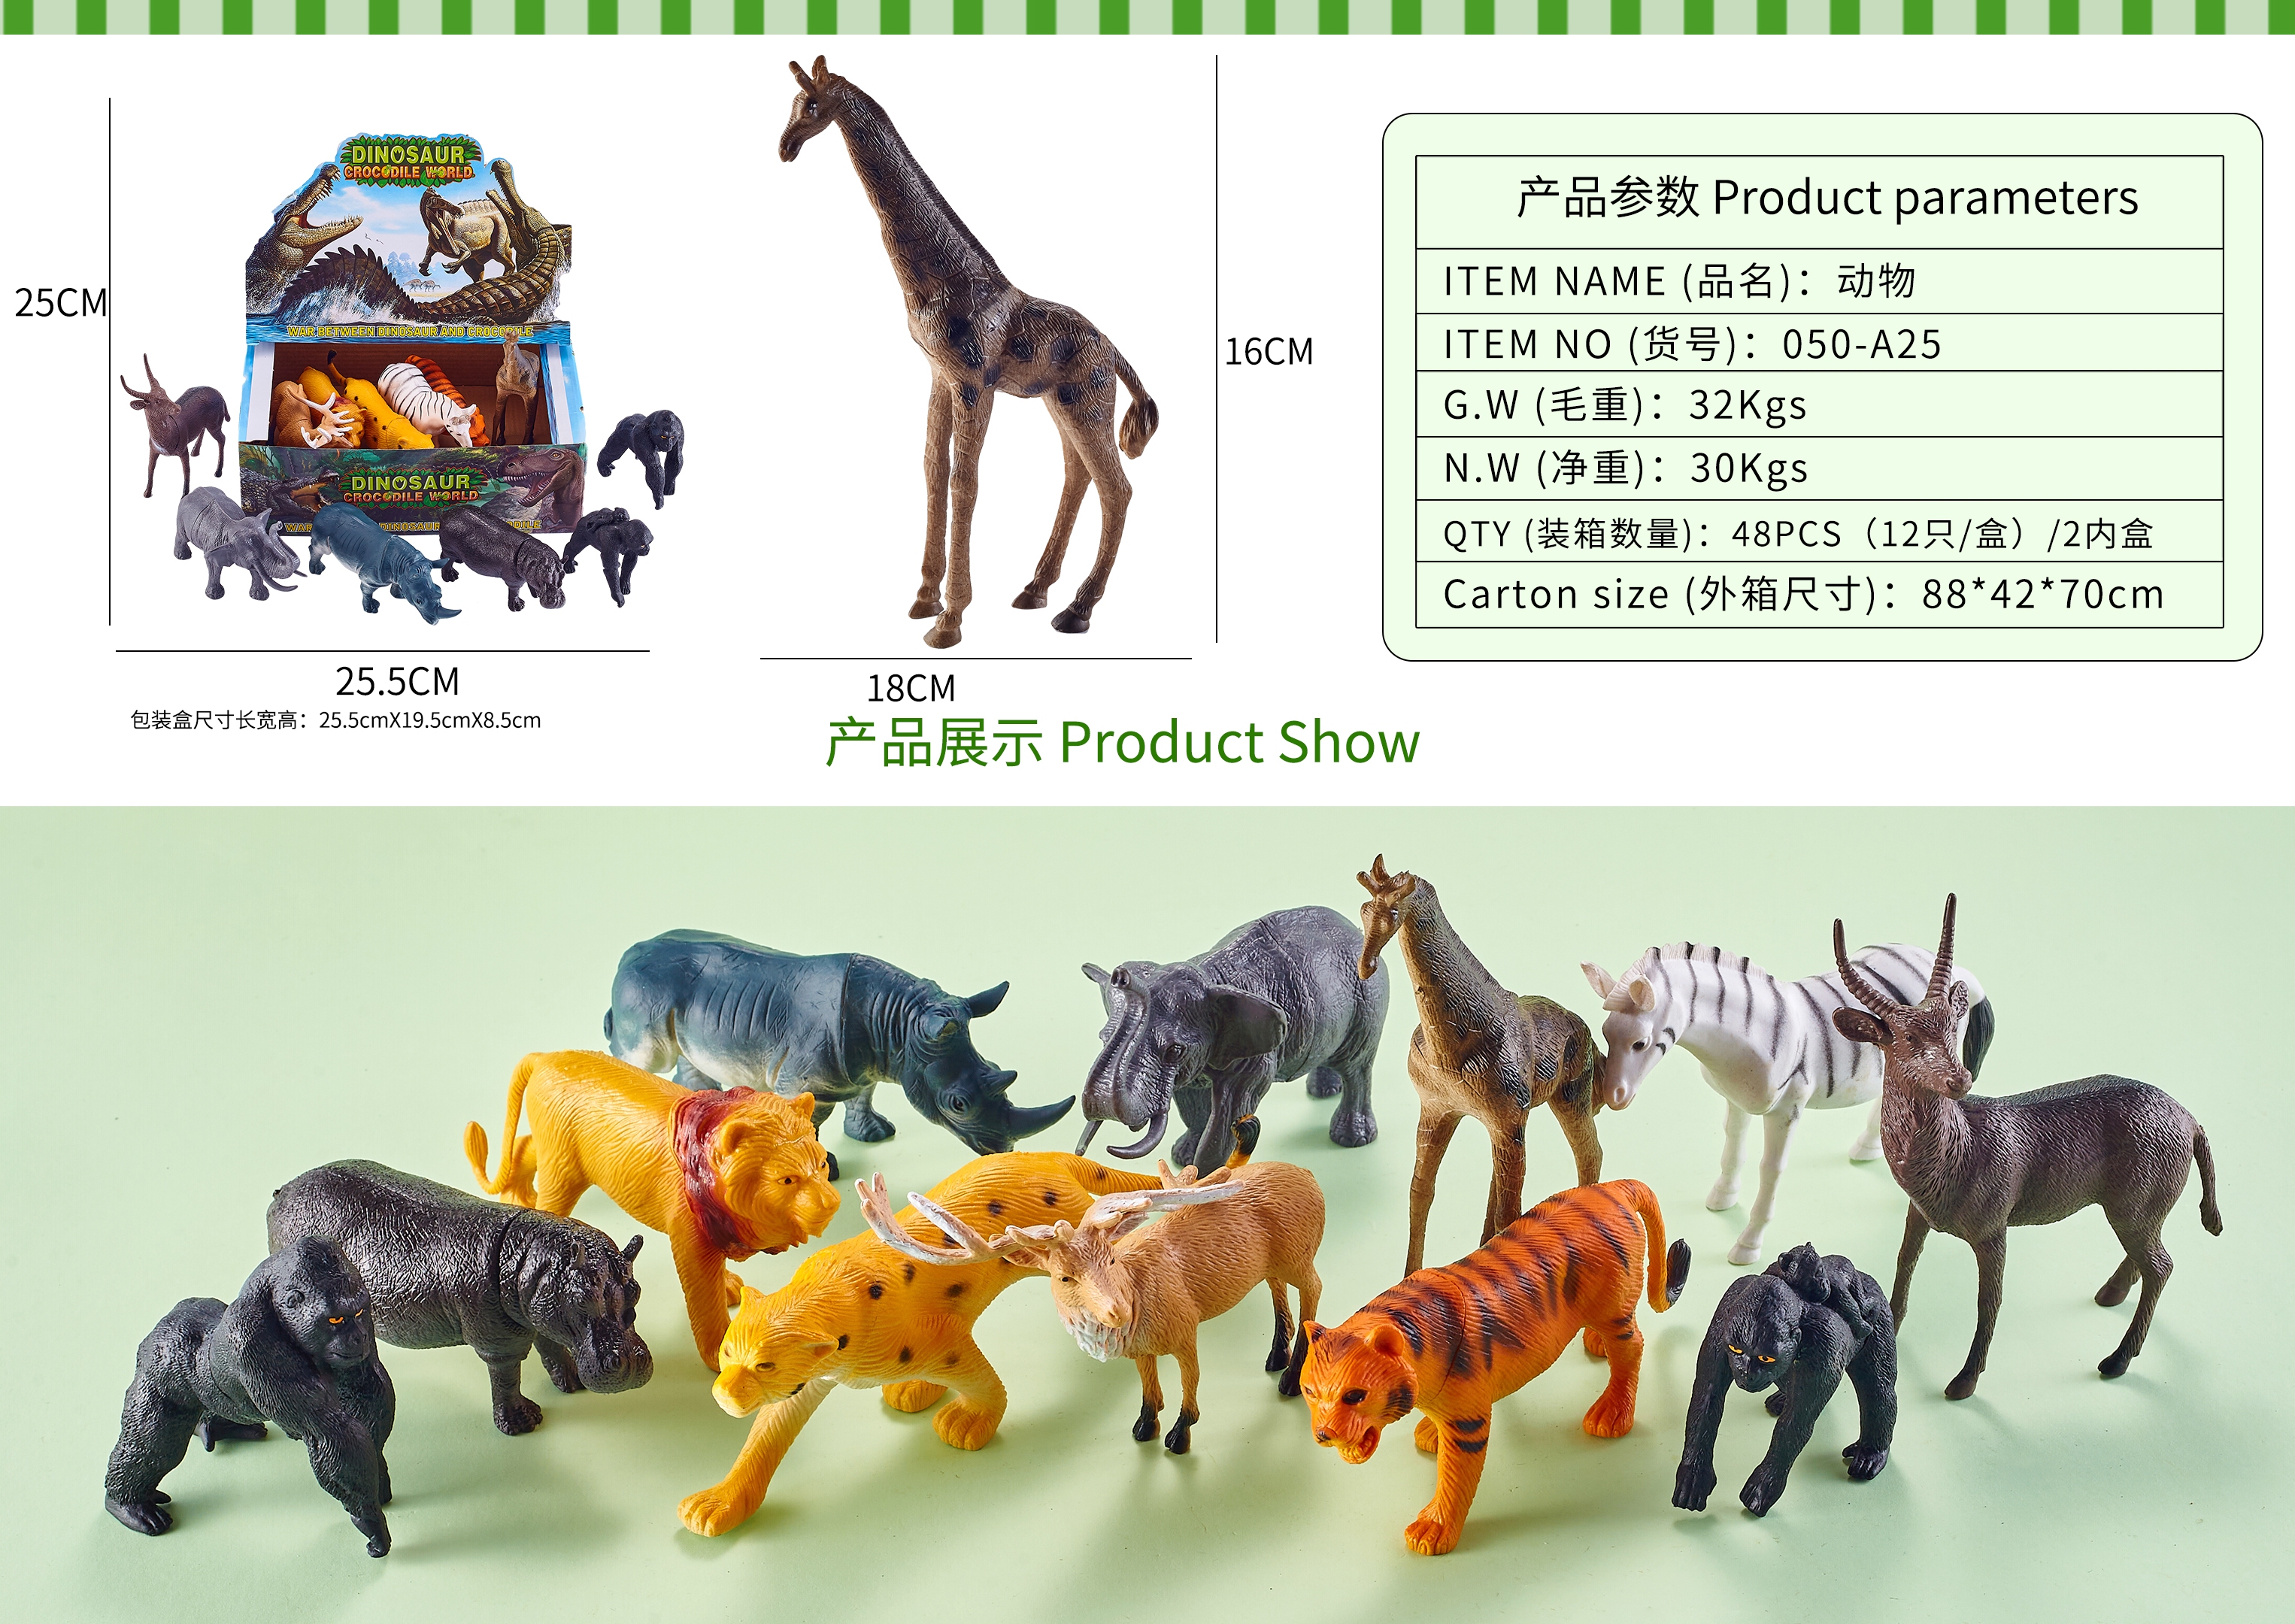 义乌黄荣仁玩具2776店面模型玩具野生动物恐龙玩具海洋动物系列HC689